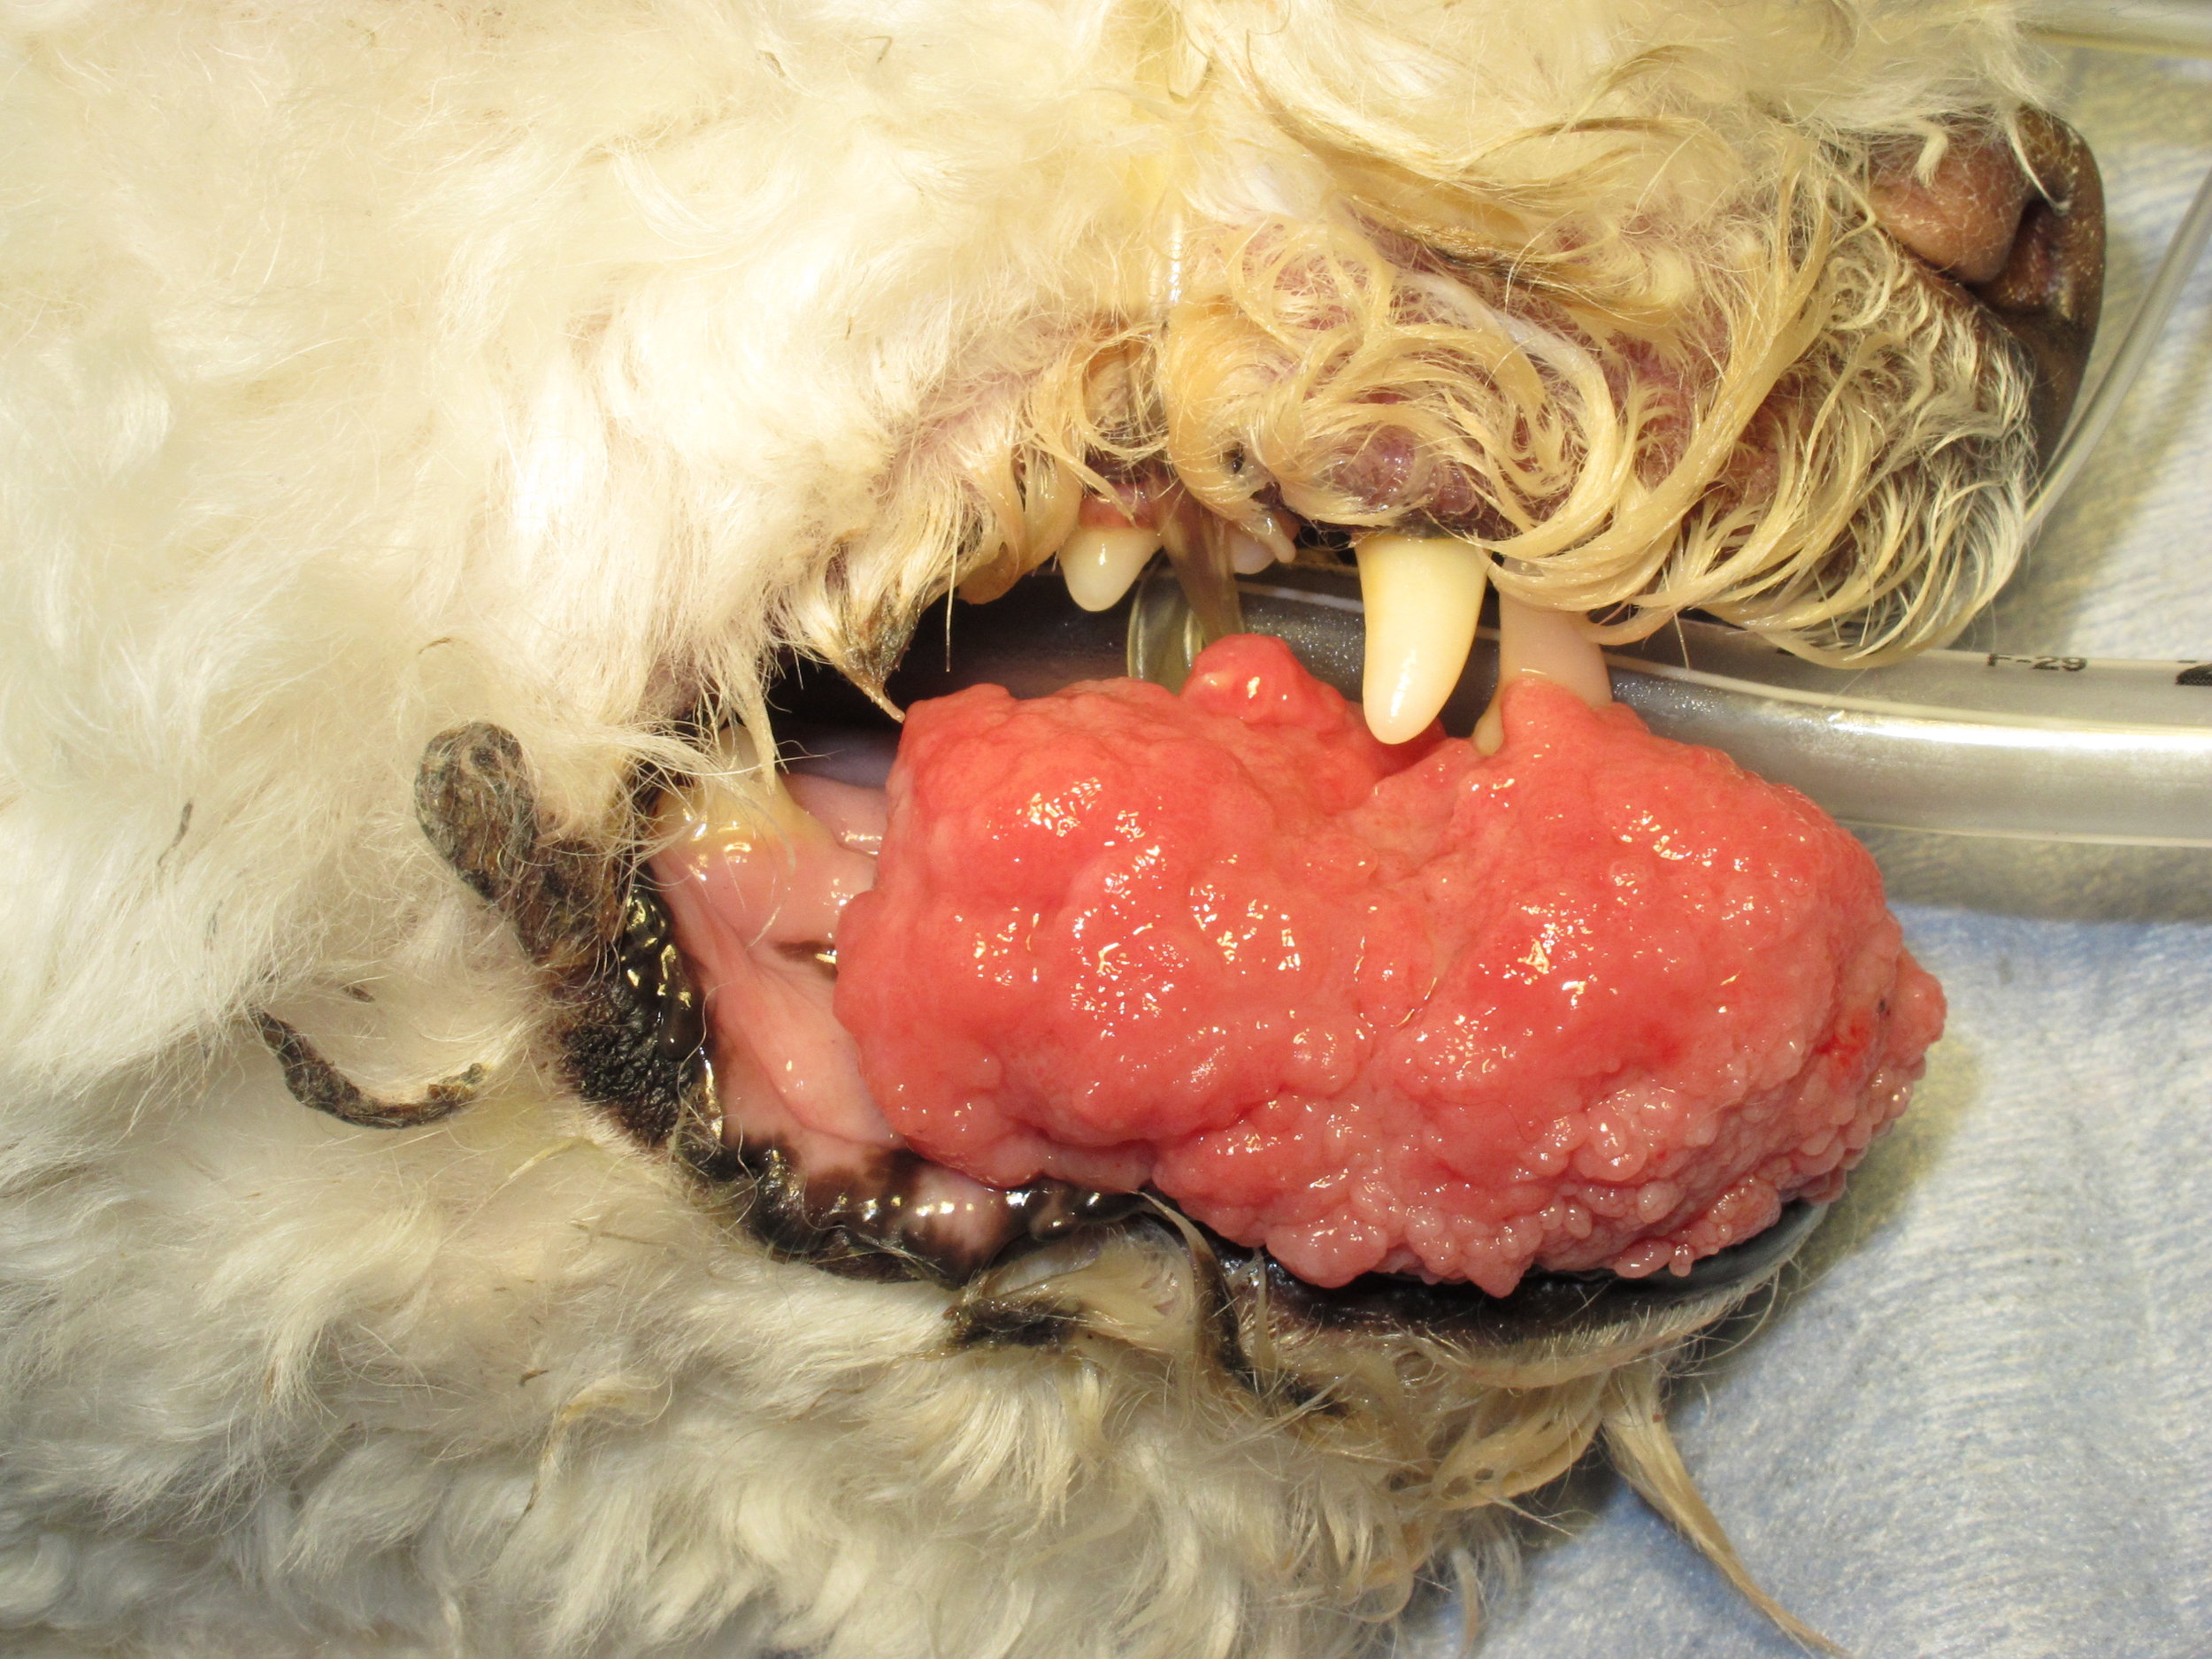 Acanthomatous Ameloblastoma